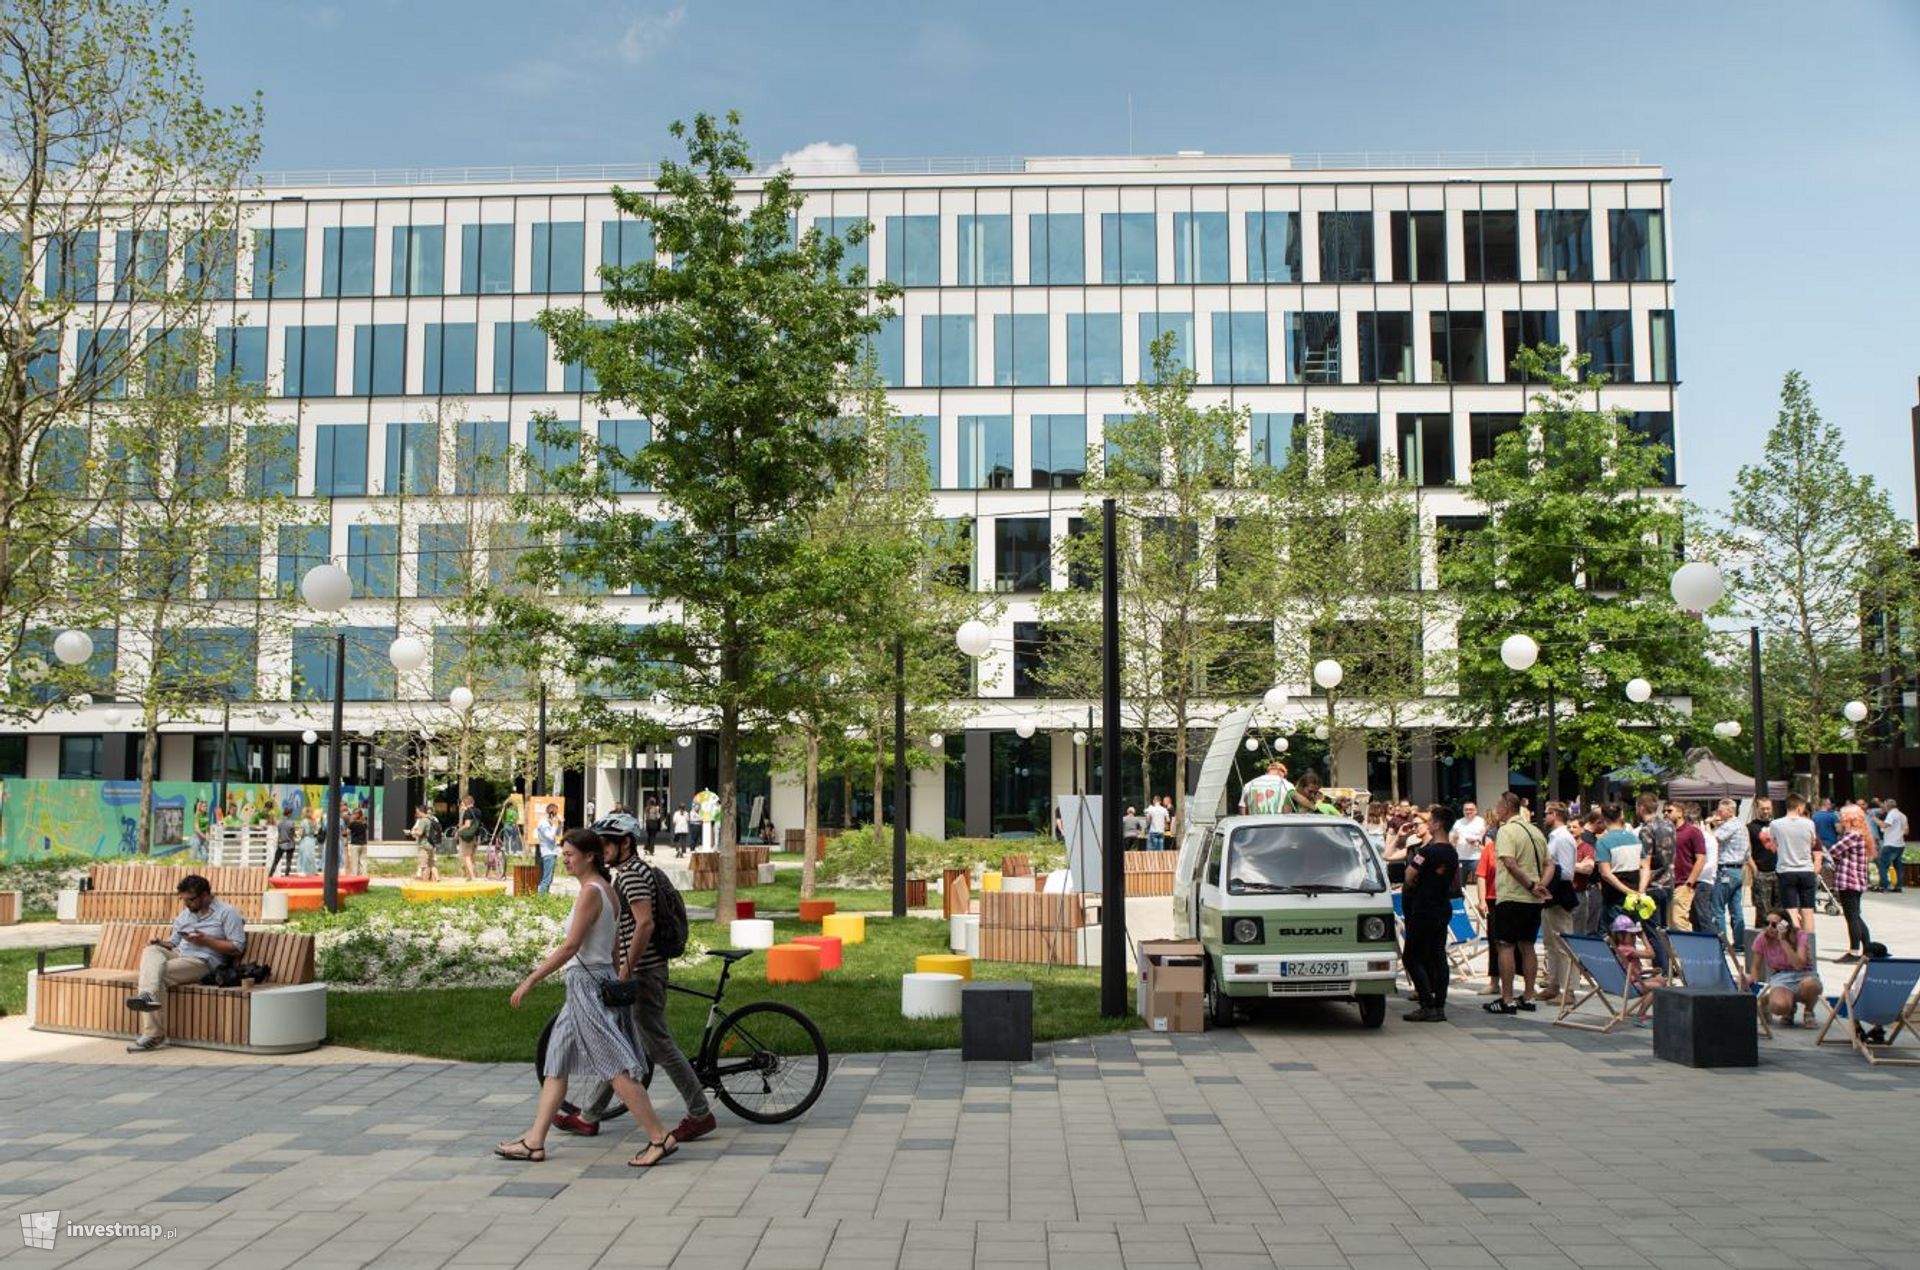 Nowa przestrzeń w Poznaniu już gotowa. Wewnętrzny plac w ramach kompleksu Nowy Rynek został otwarty